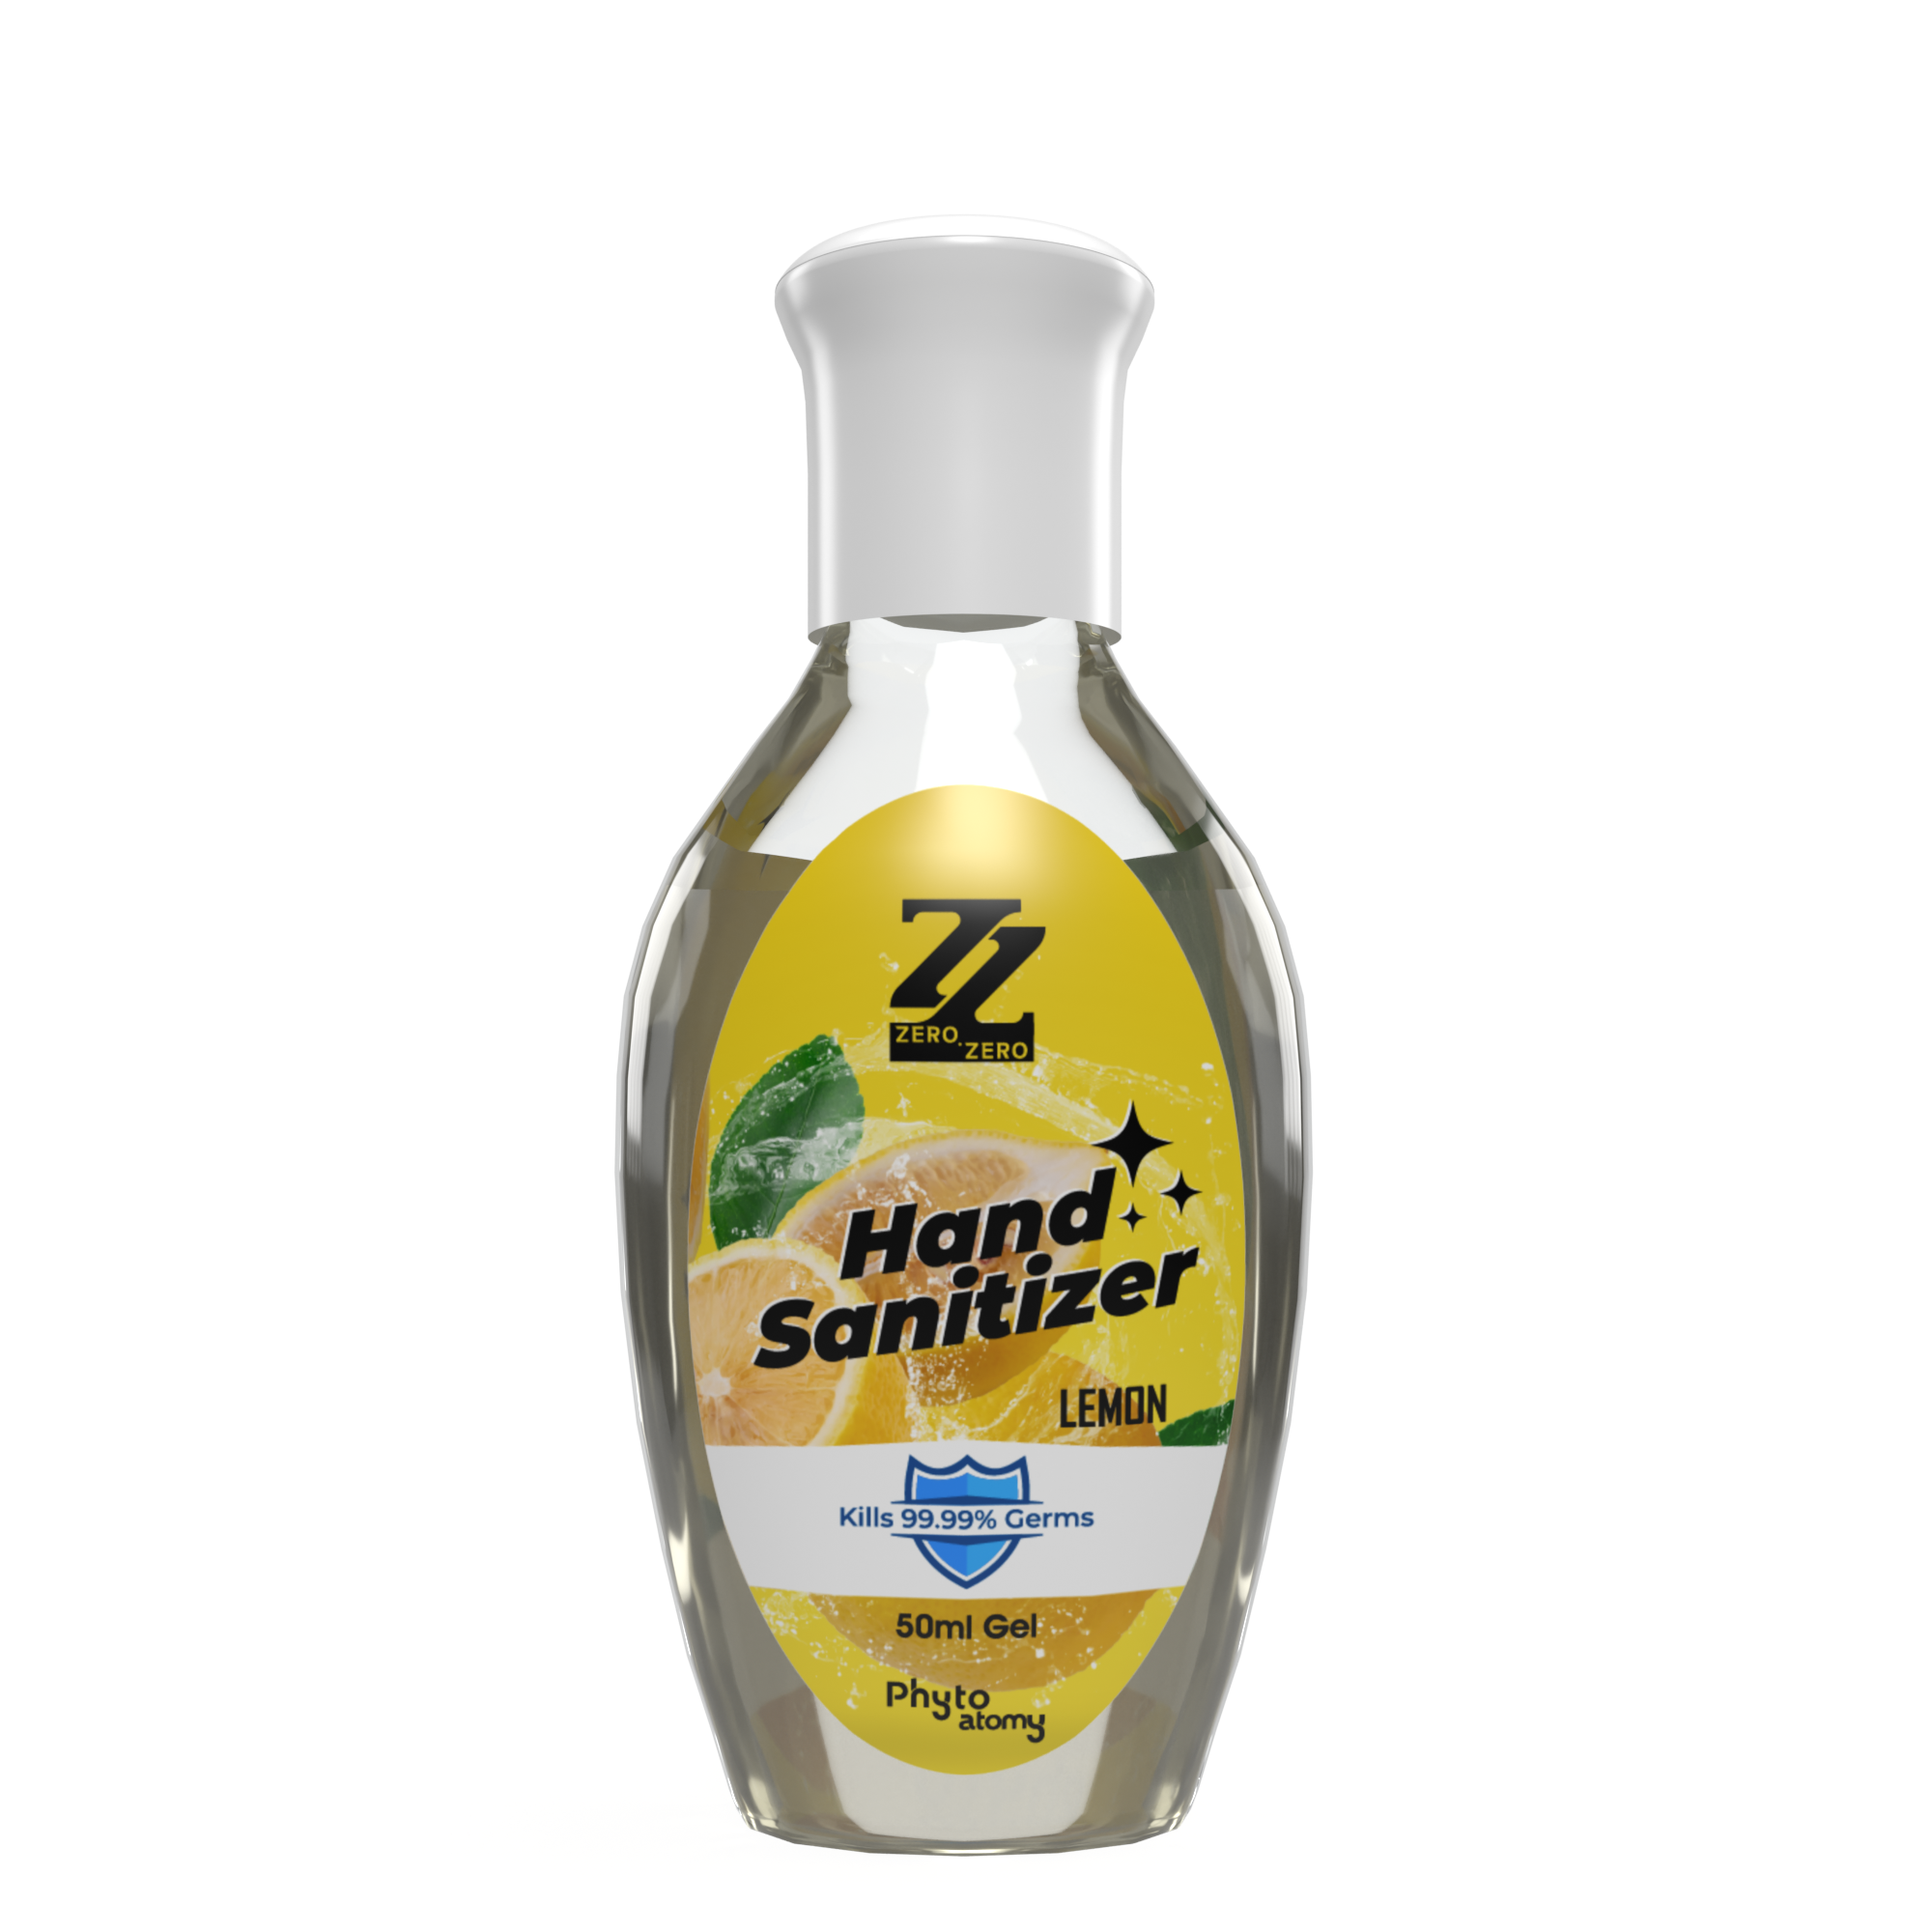 Hand Sanitizer Lemon (50ml)